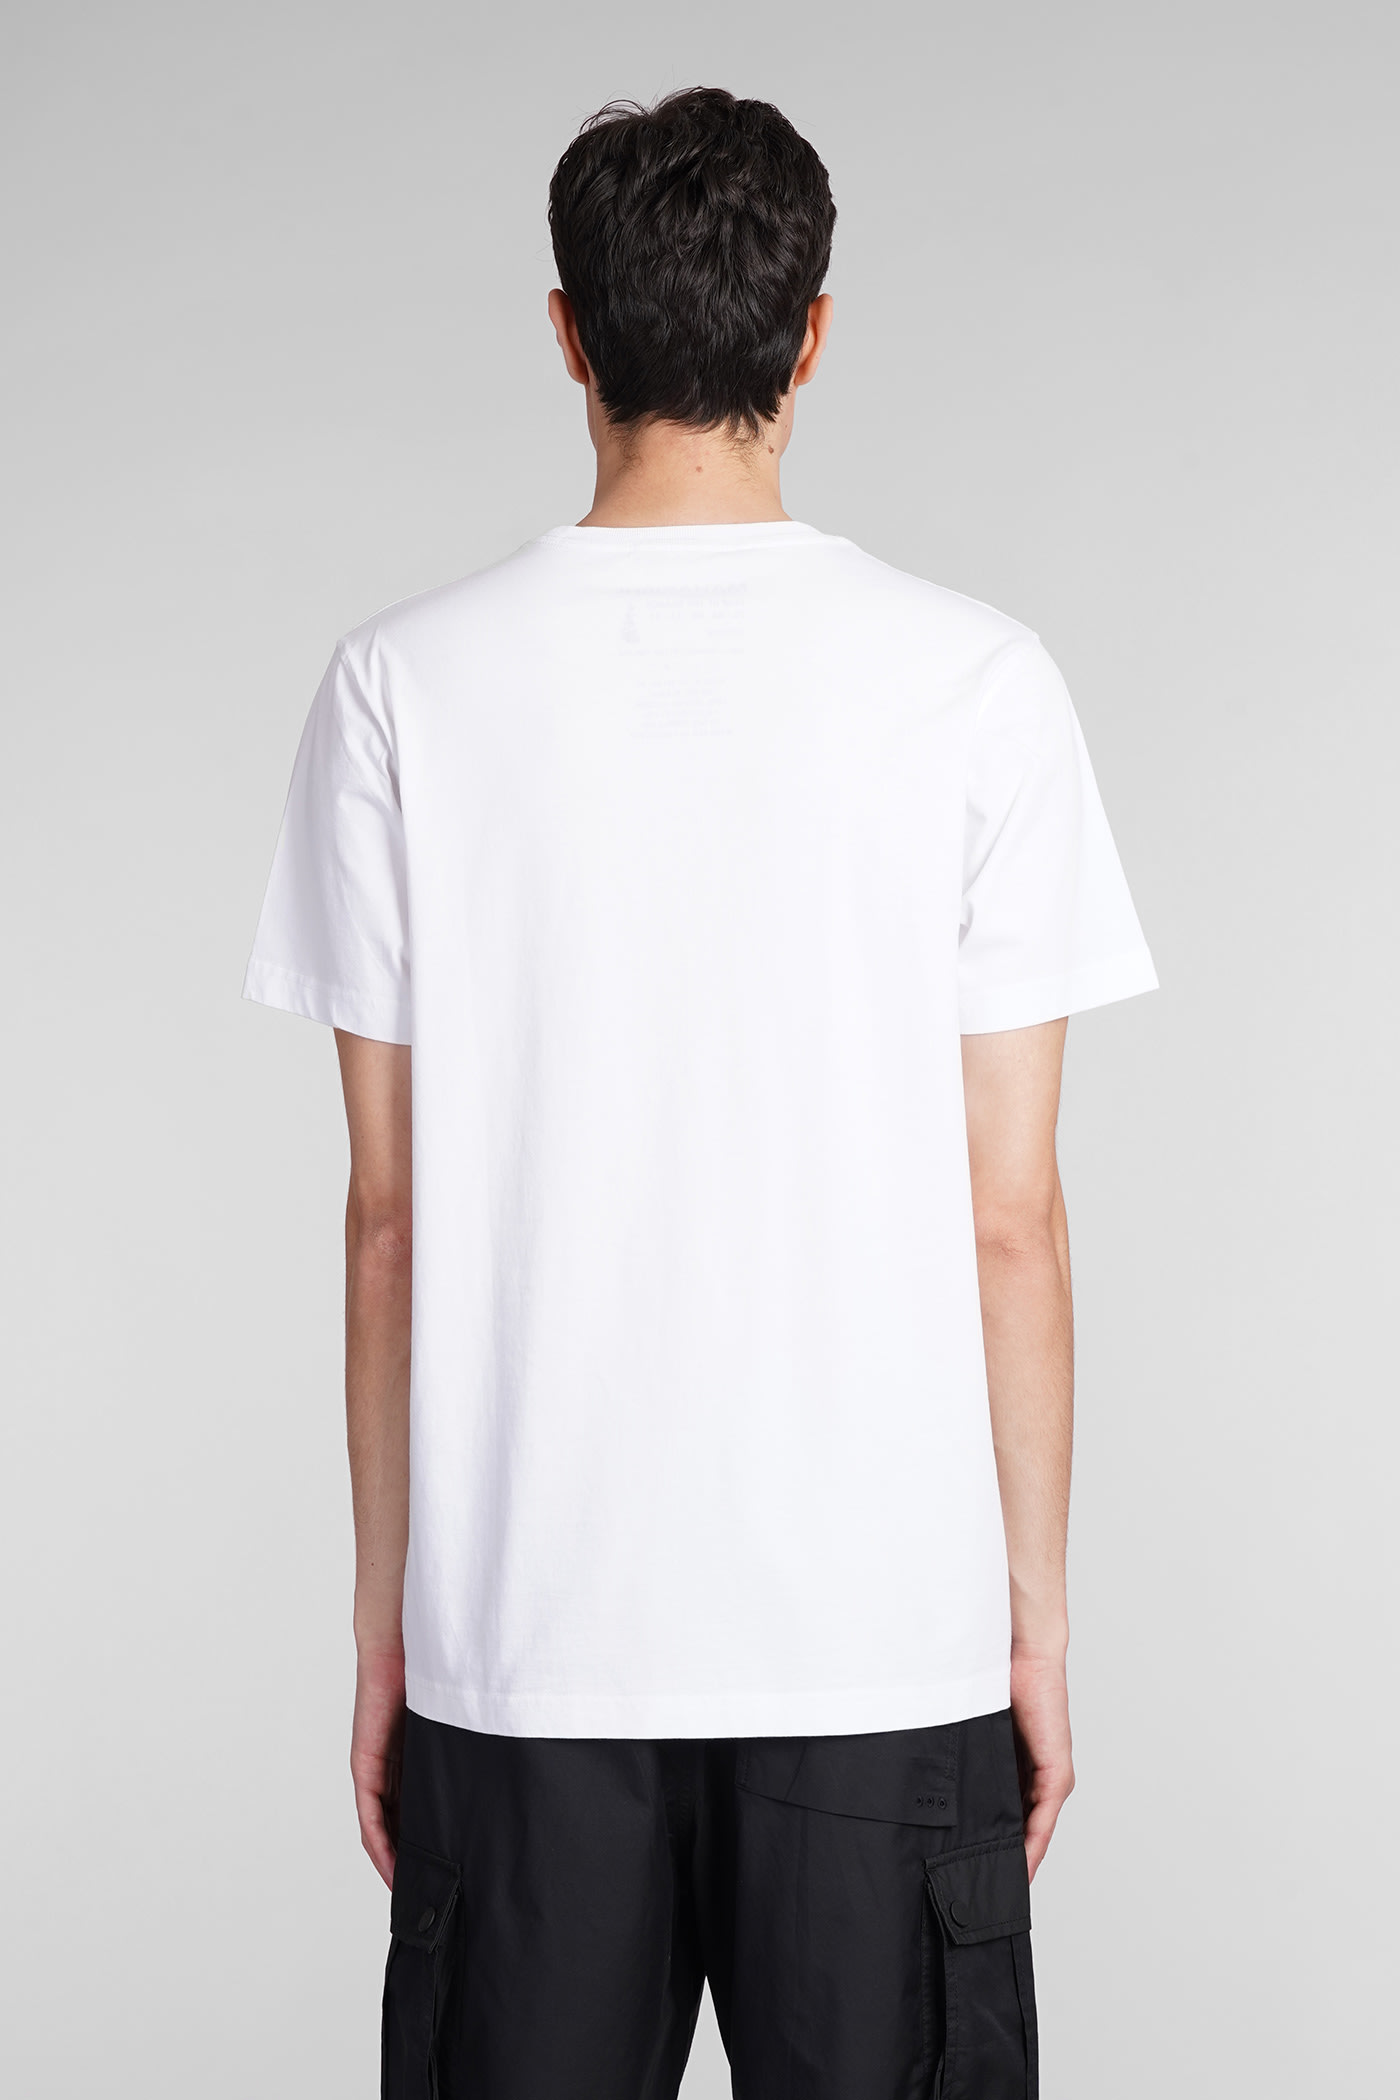 Shop Maharishi T-shirt In White Cotton